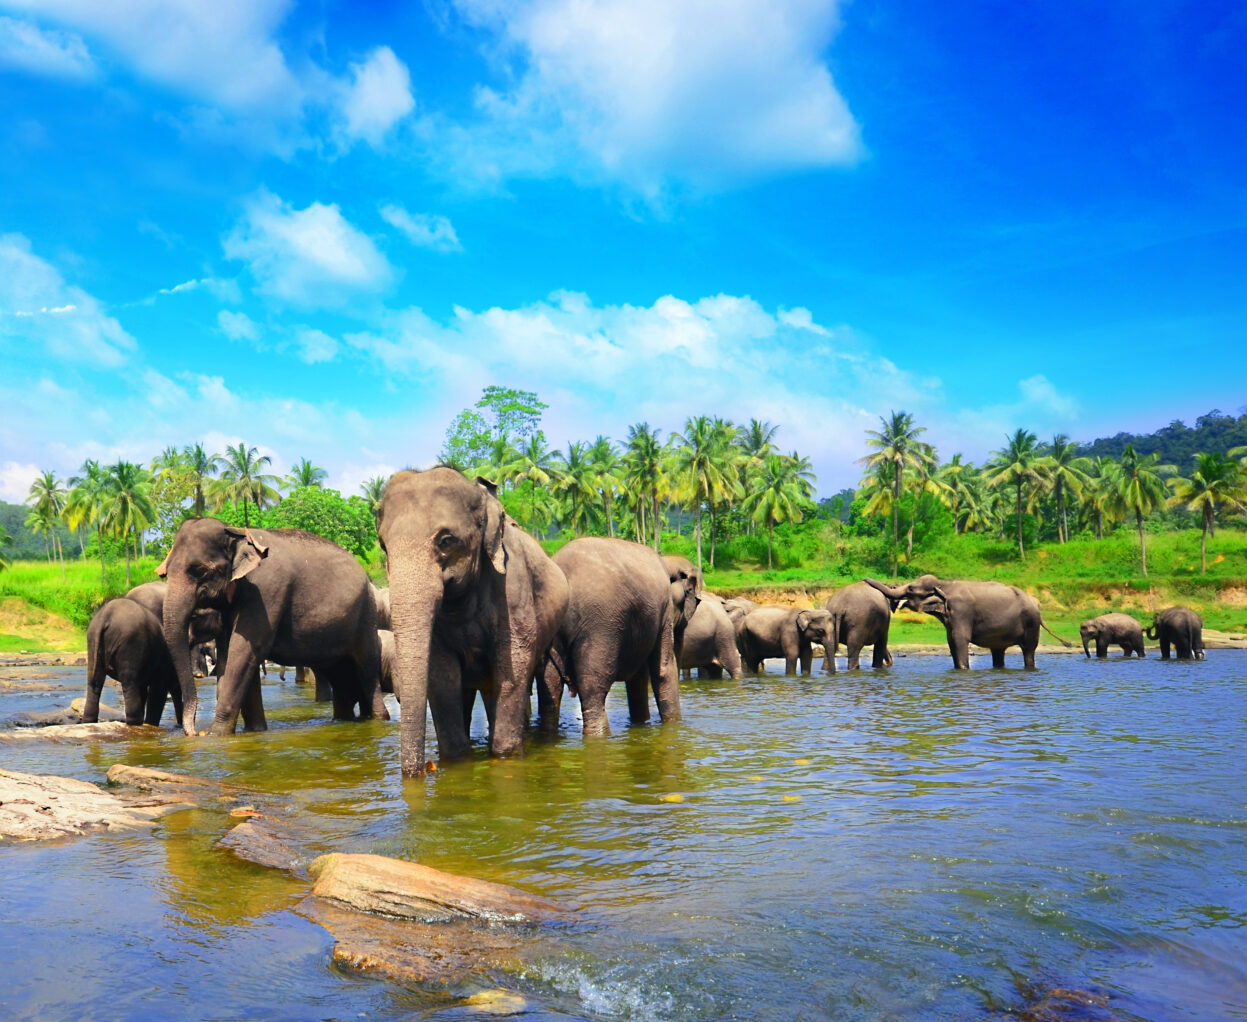 The Sri Lanka Pinnawala elephants are a sight to behold.